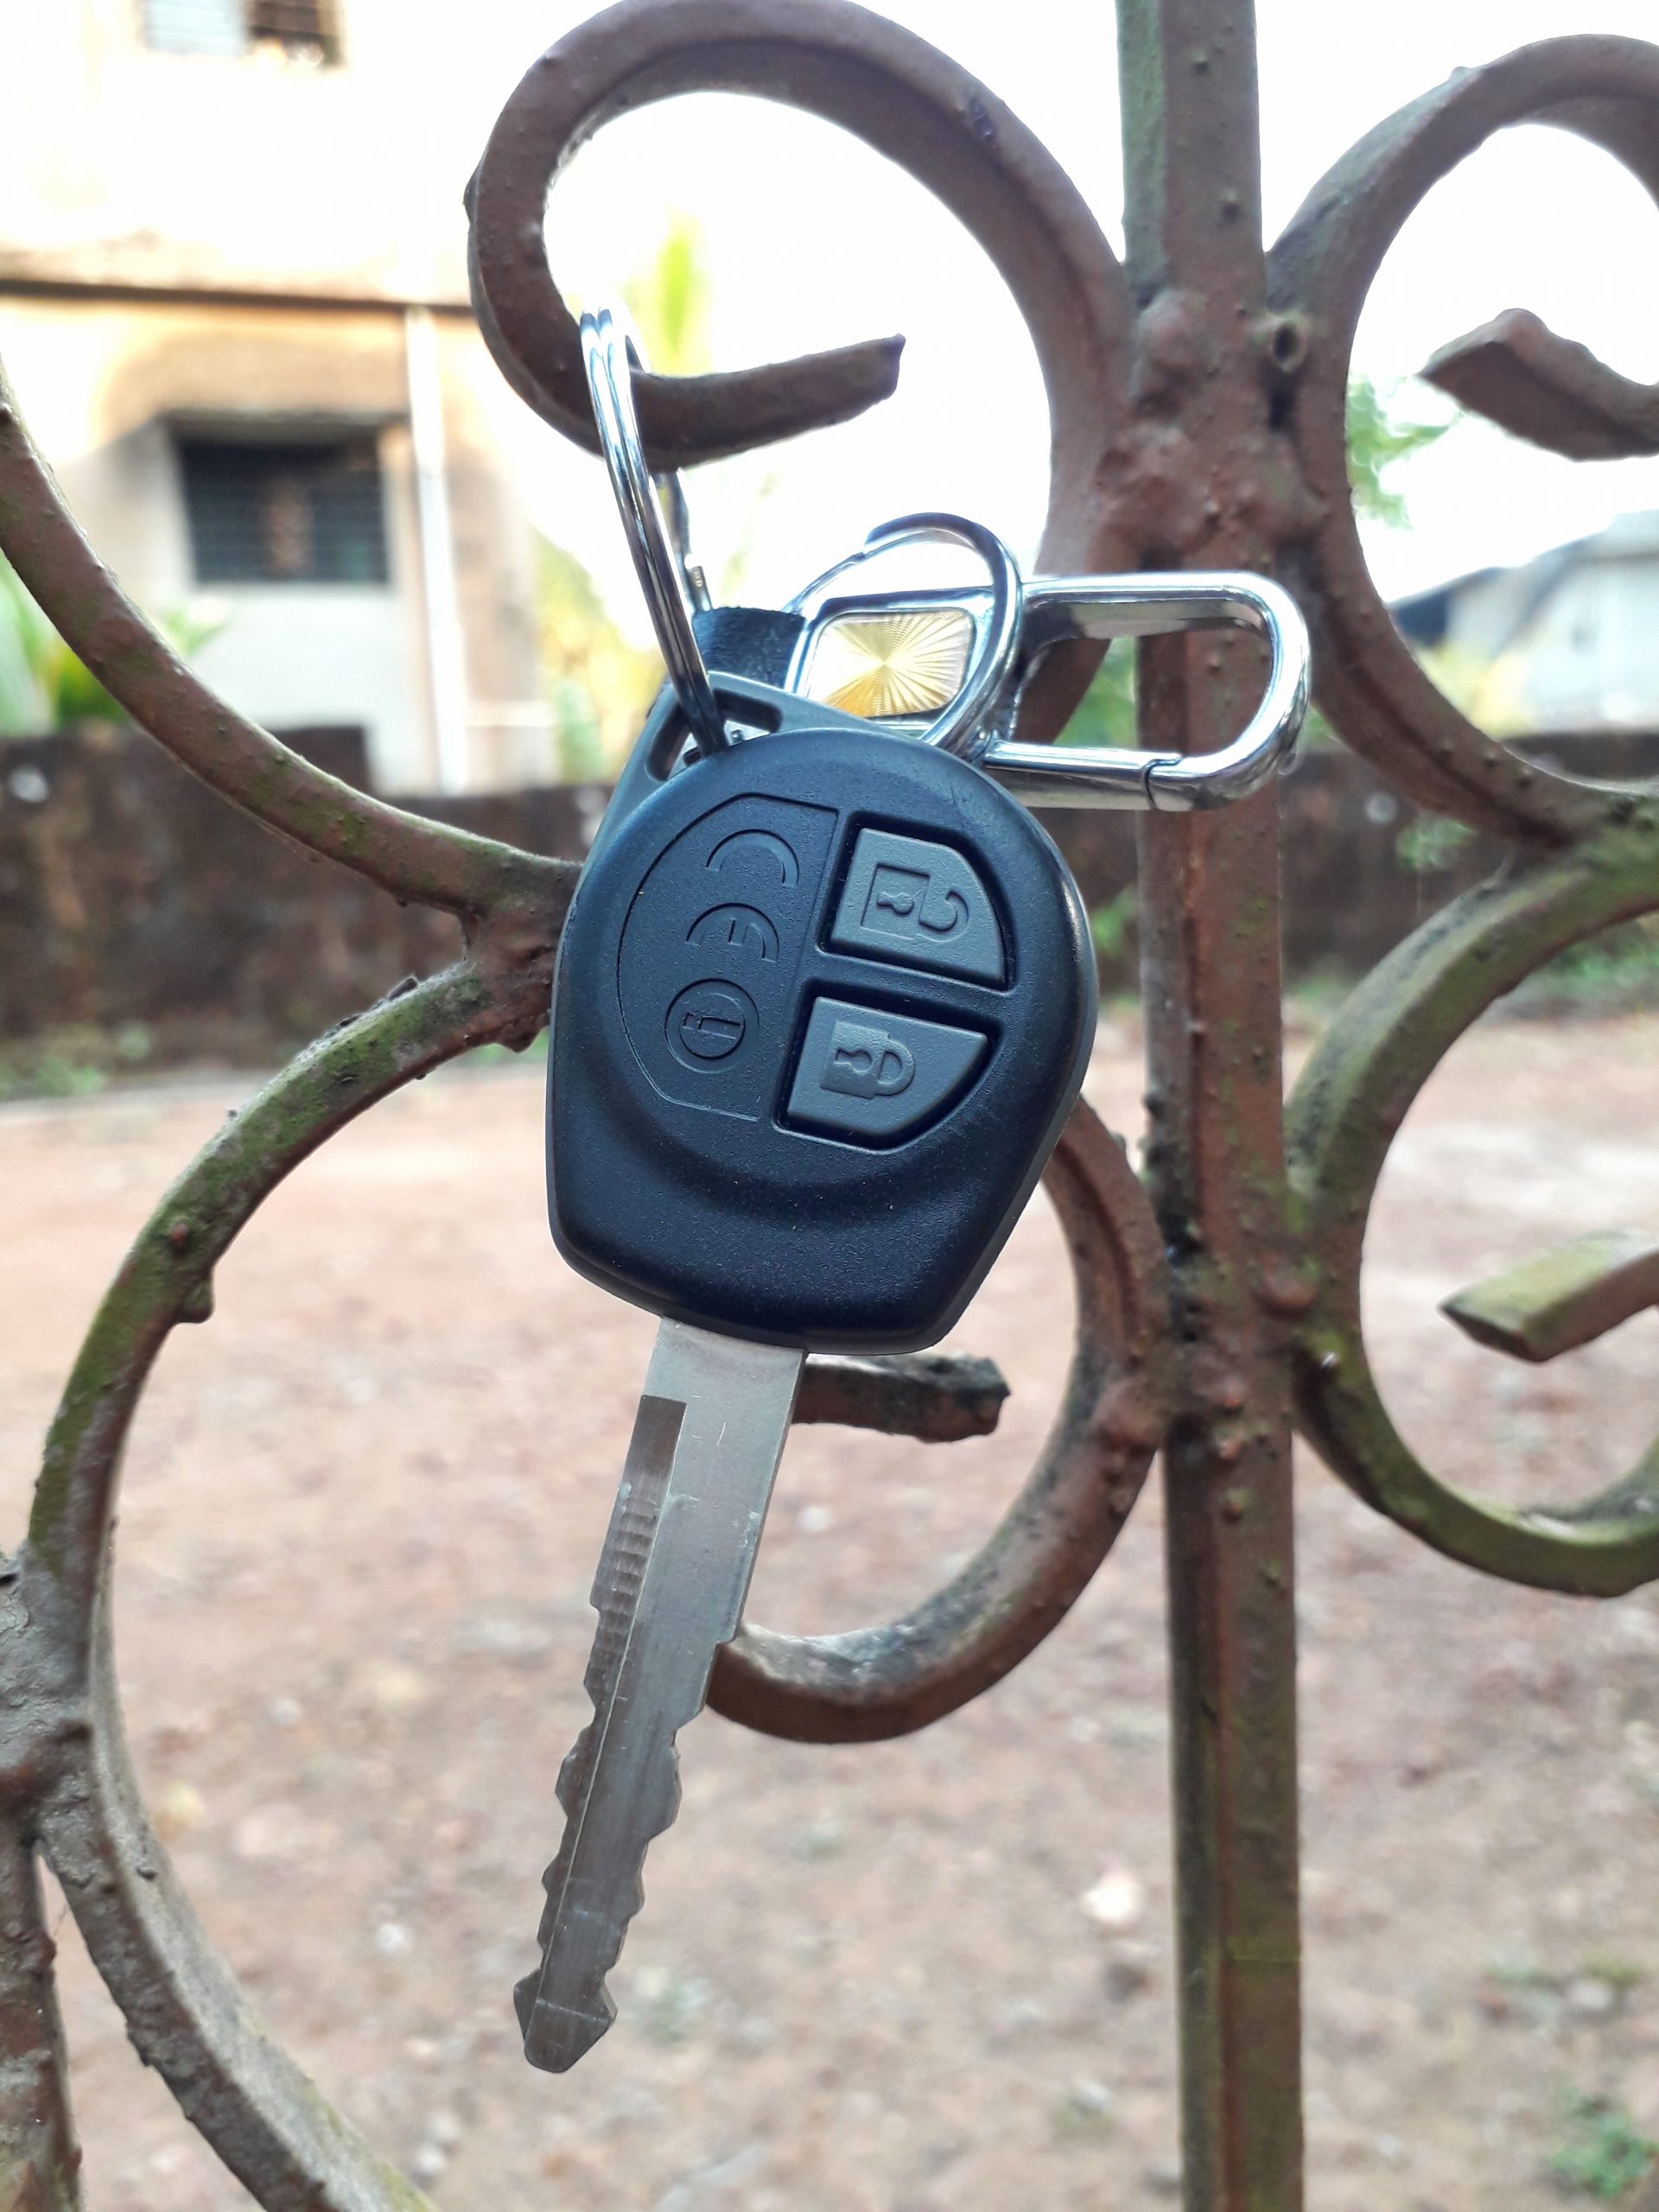 A car key